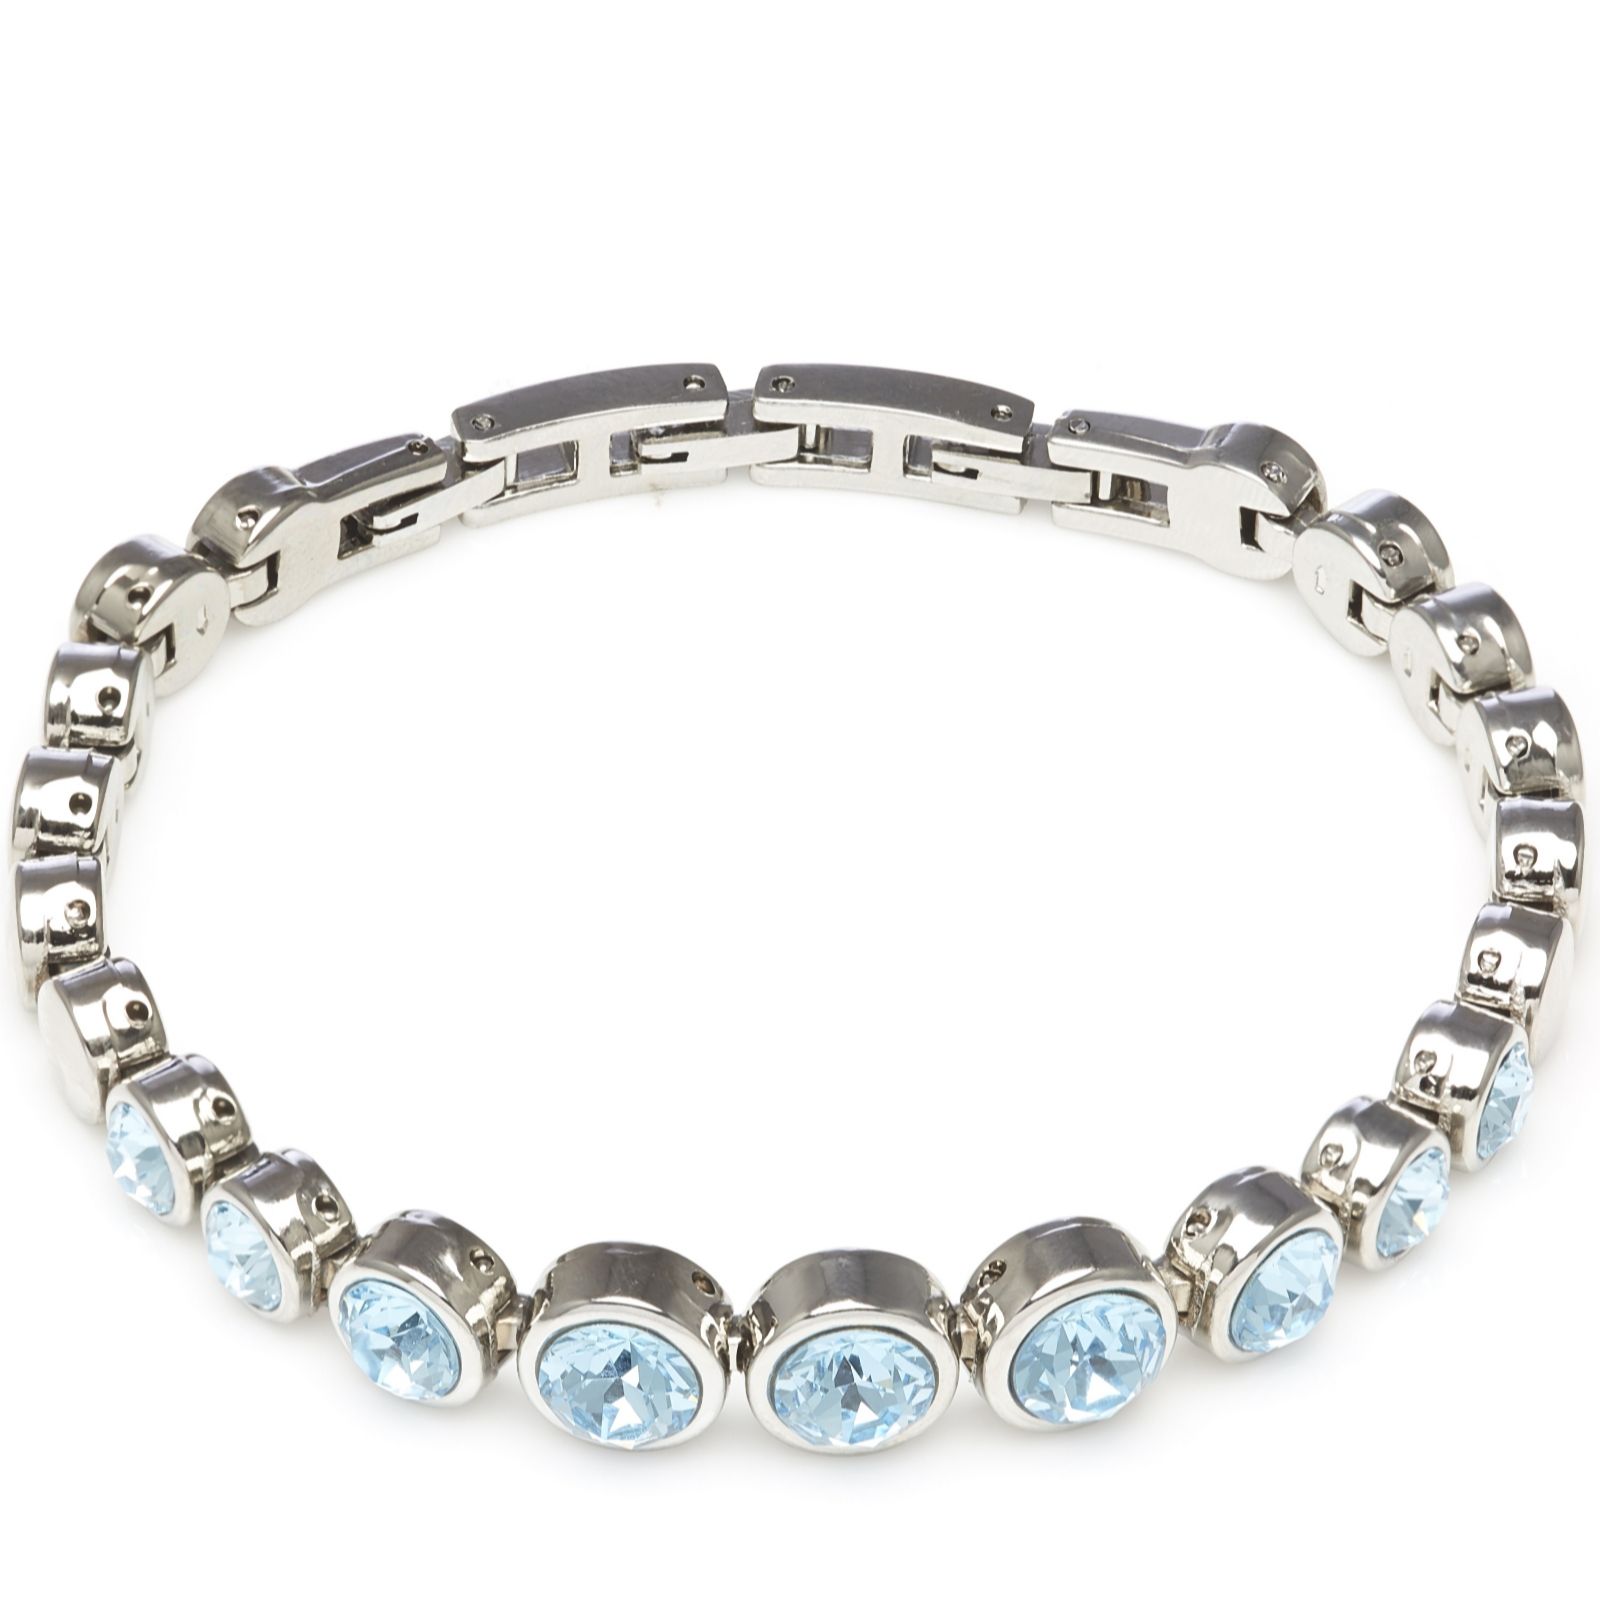 Outlet Aurora Swarovski Crystal Tennis Bracelet with Adjustable Links ...